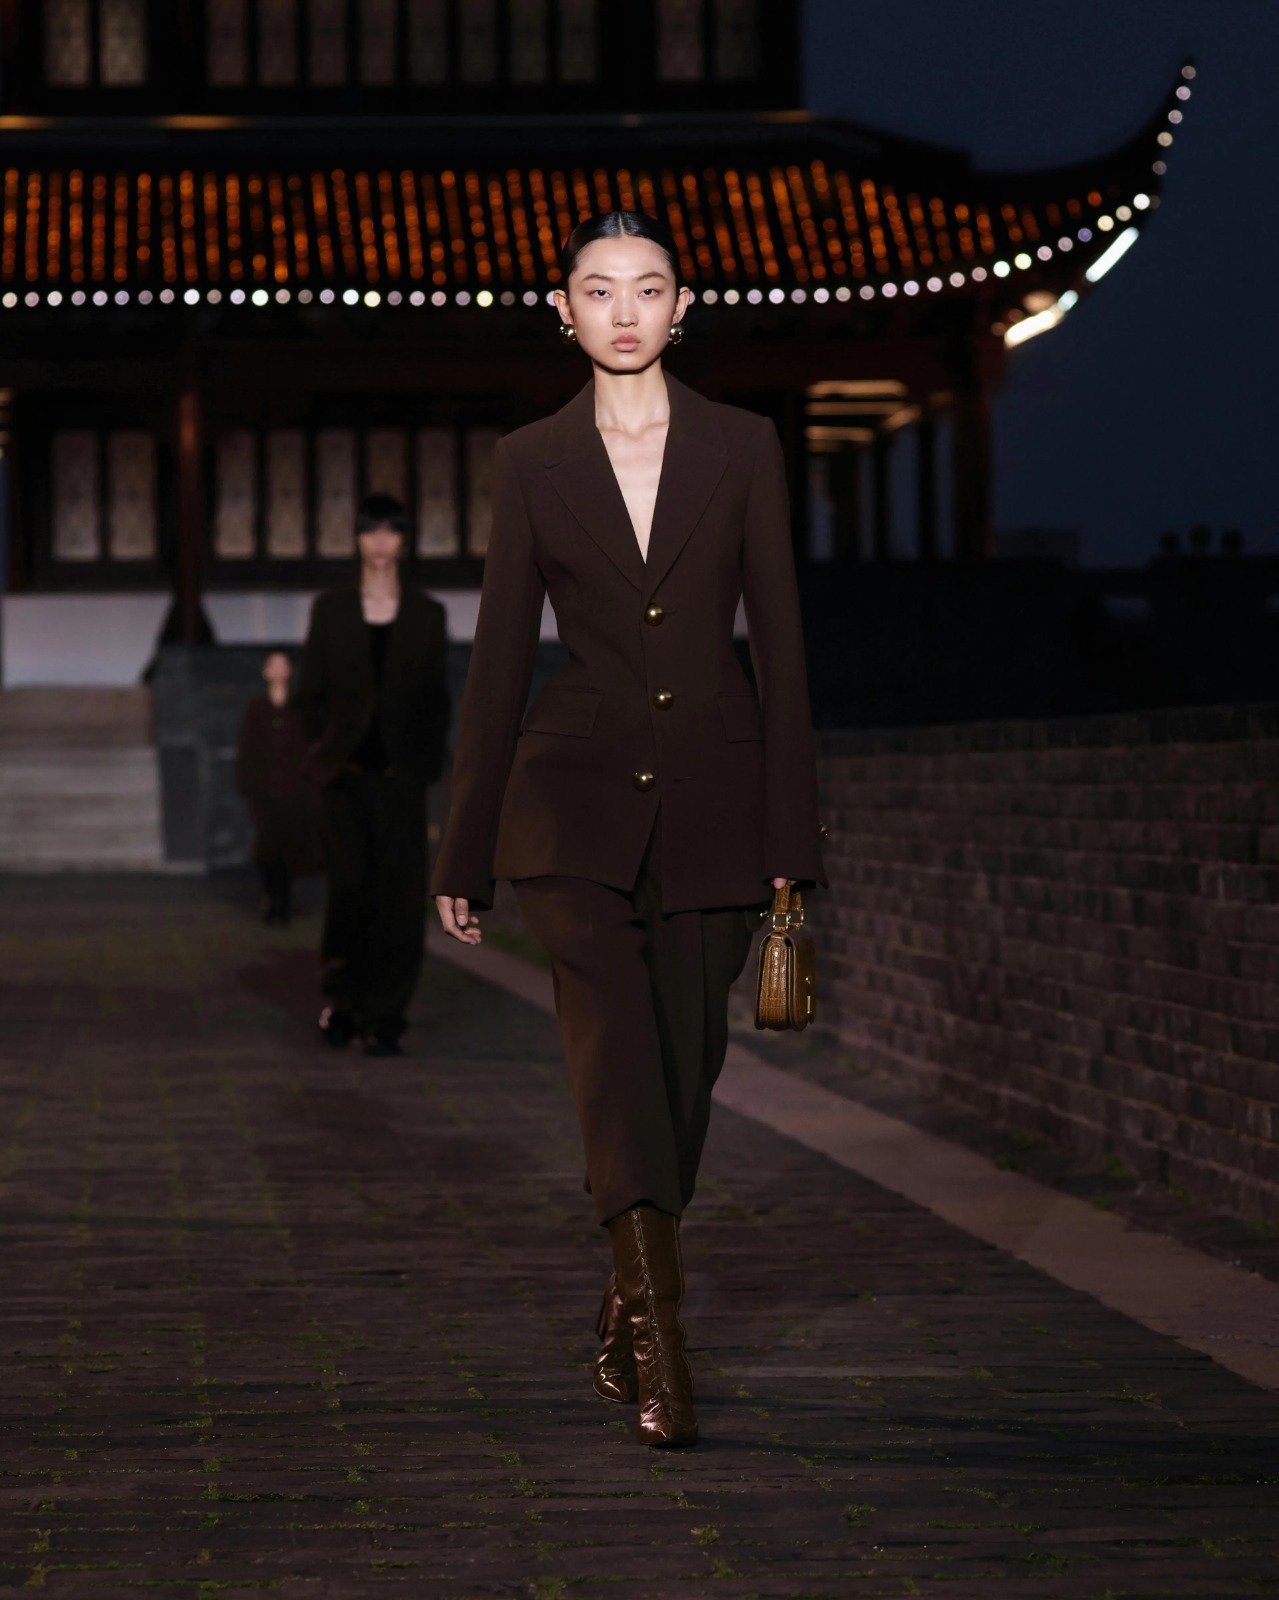 A AMI Paris veste a noite de Suzhou com elegância parisiense